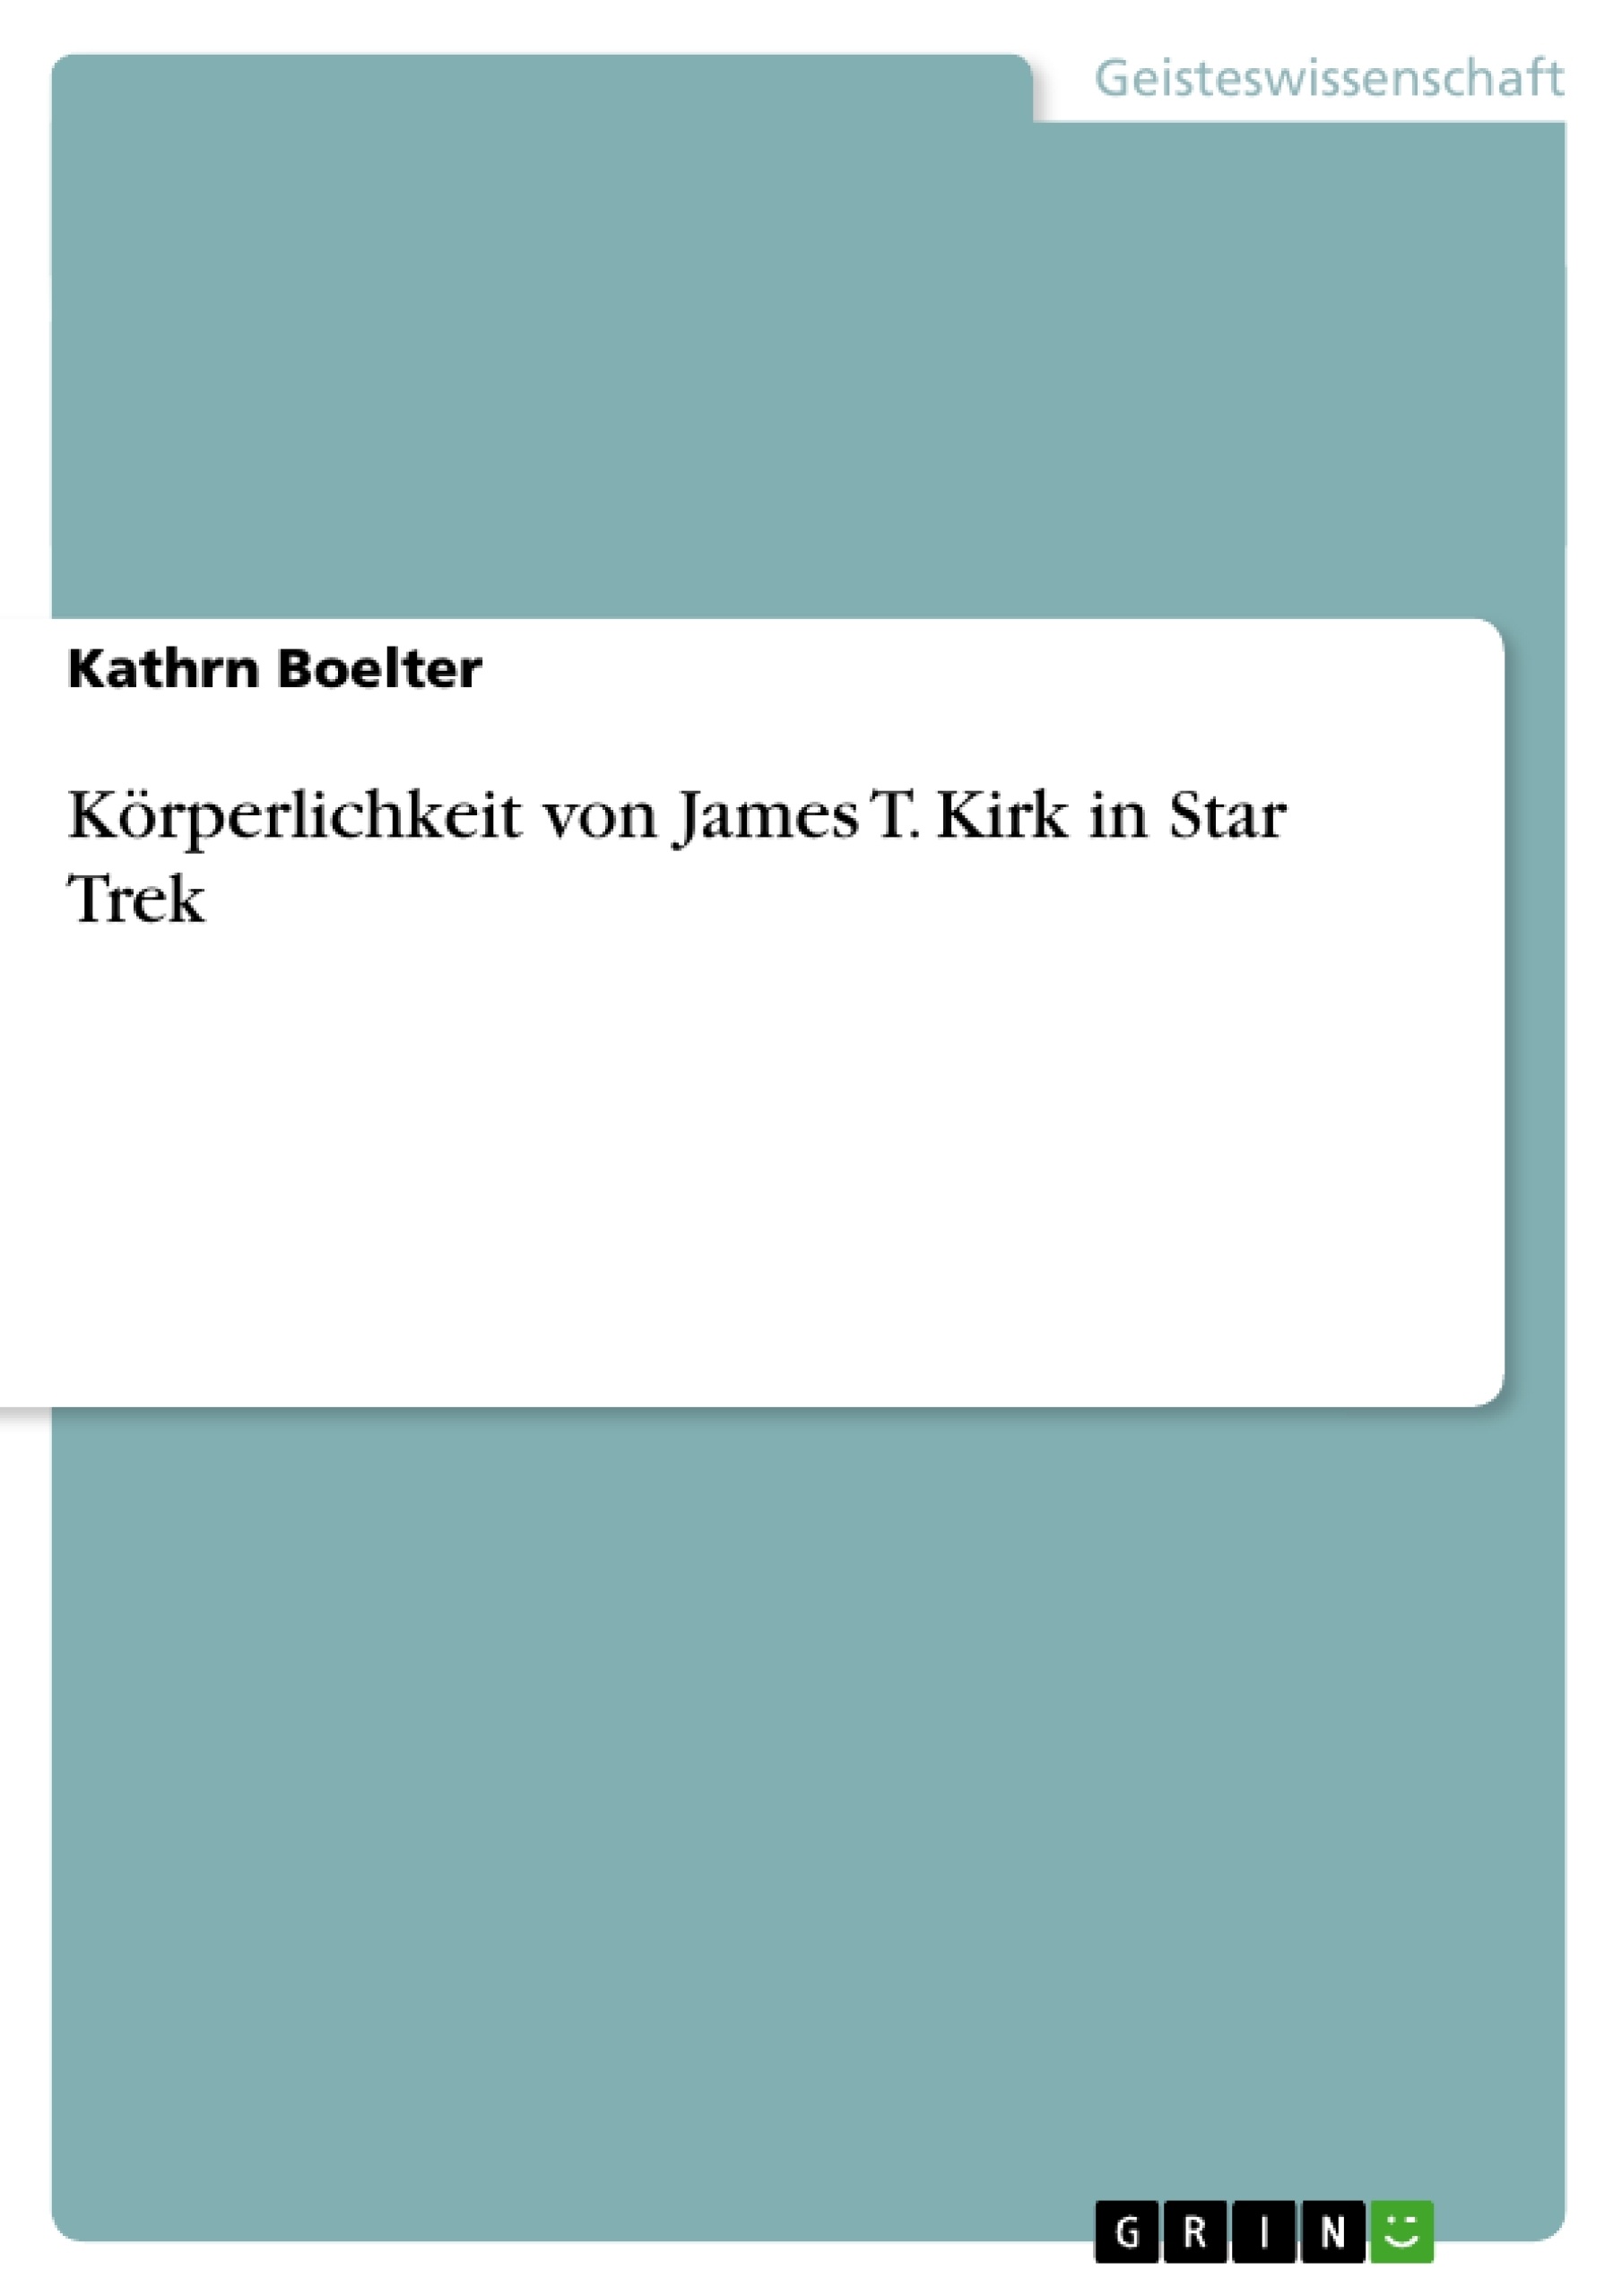 Título: Körperlichkeit von James T. Kirk in Star Trek